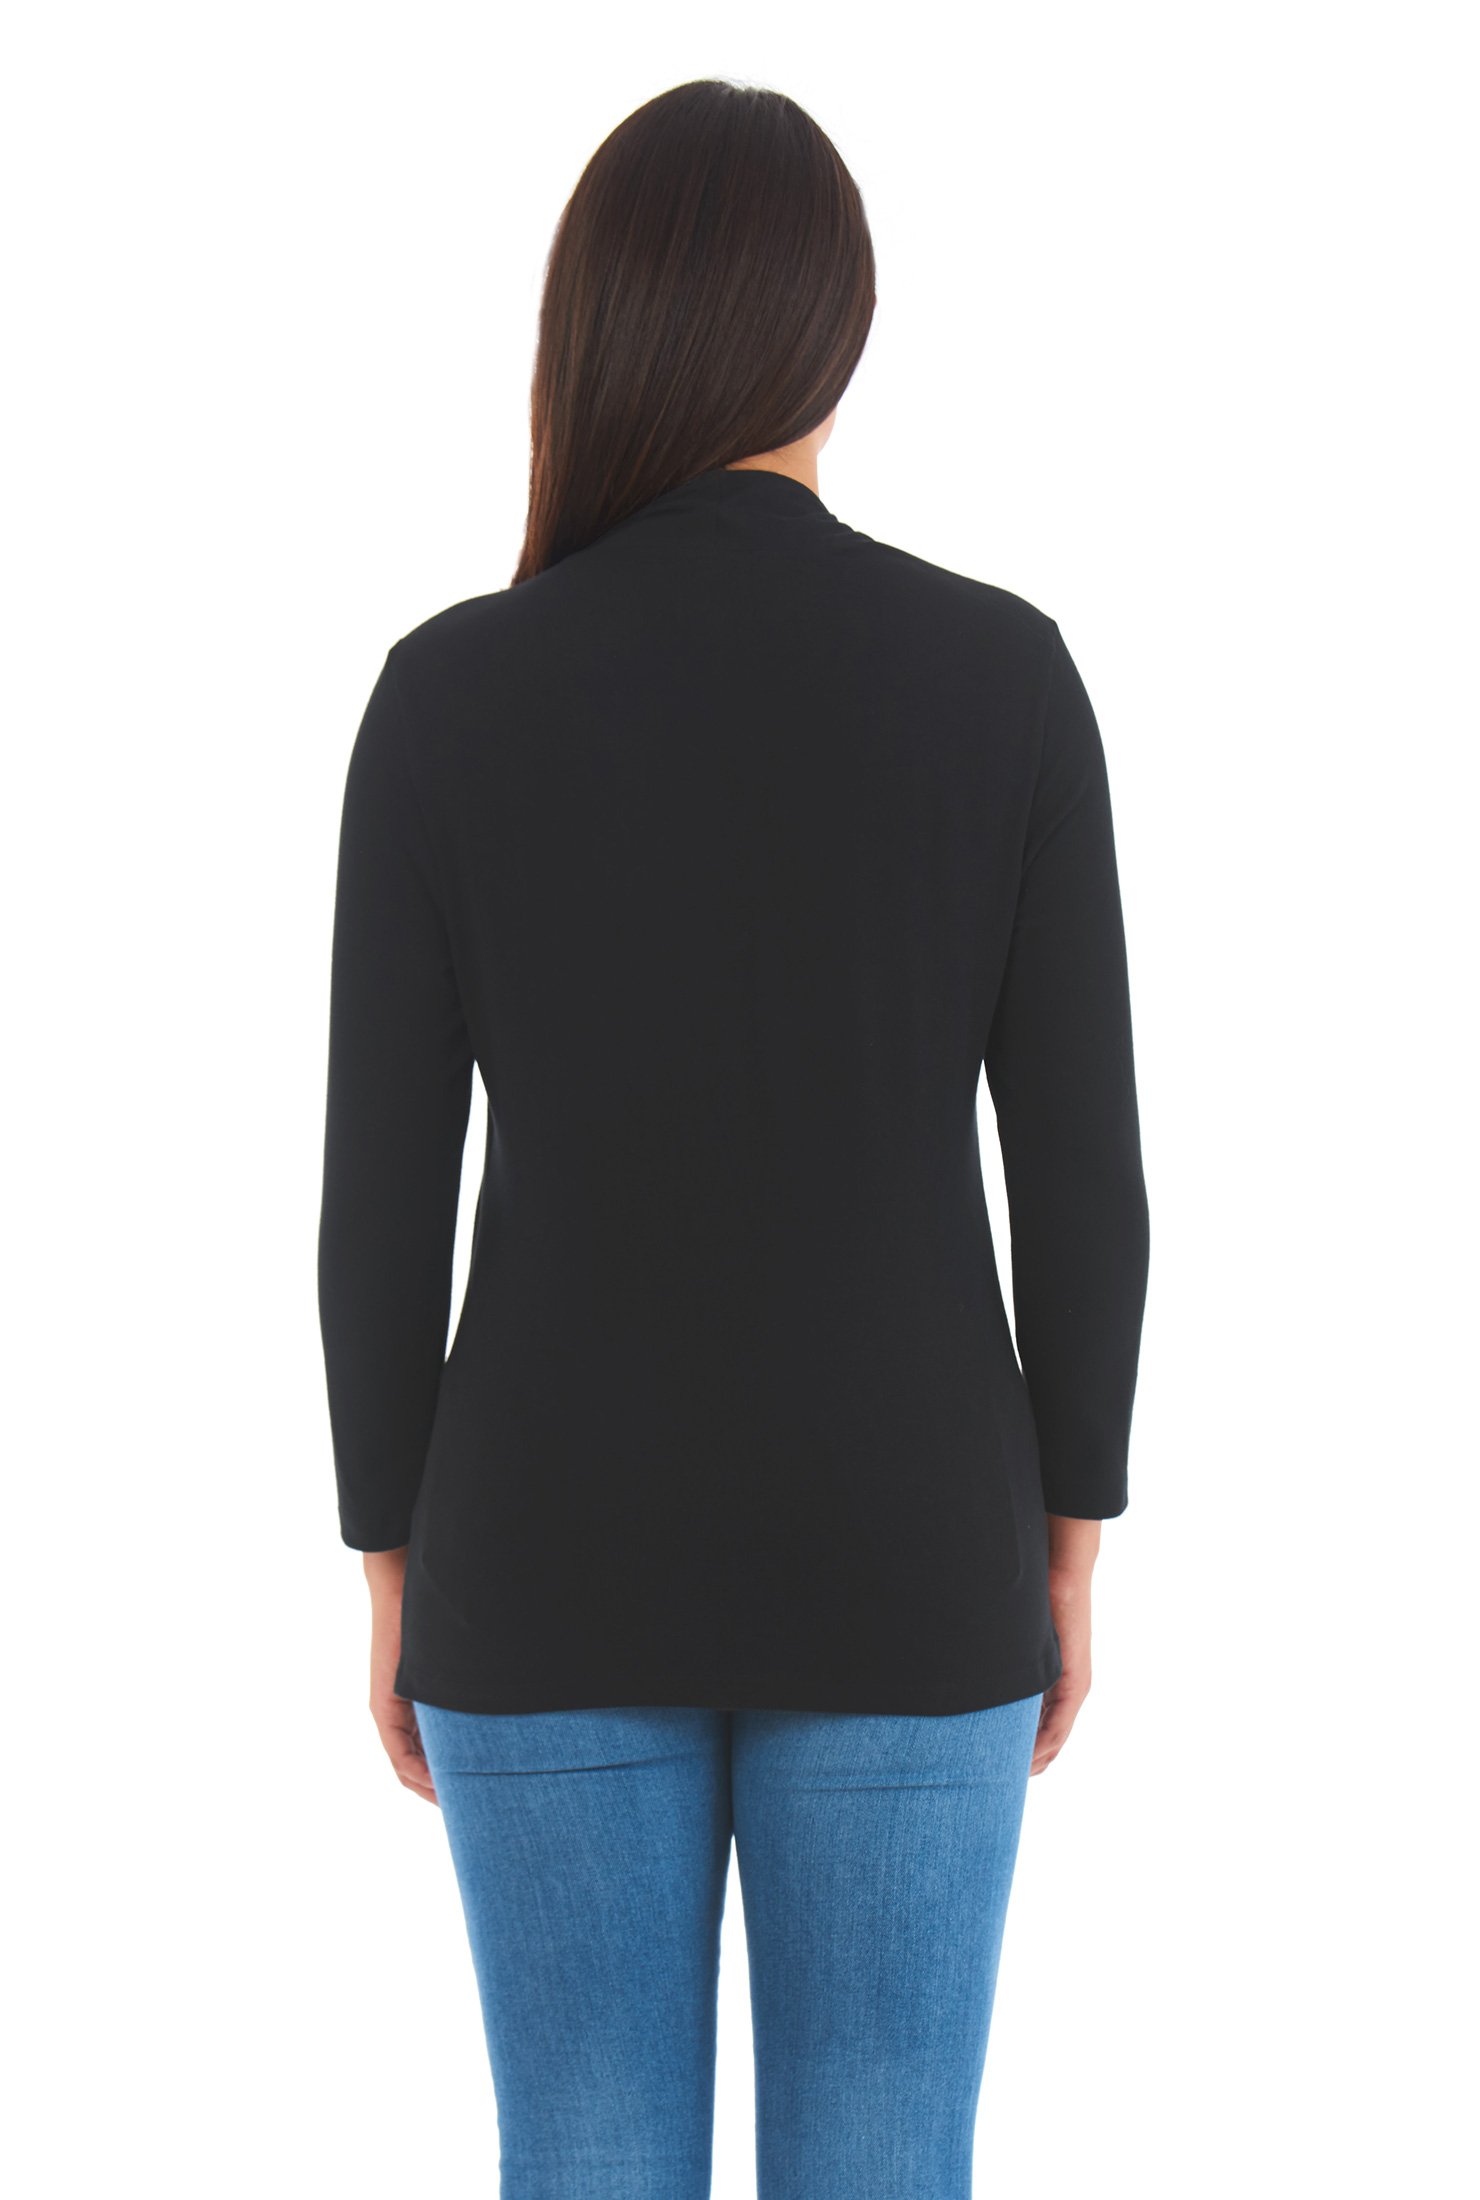 Shop Cotton knit asymmetric neck top | eShakti